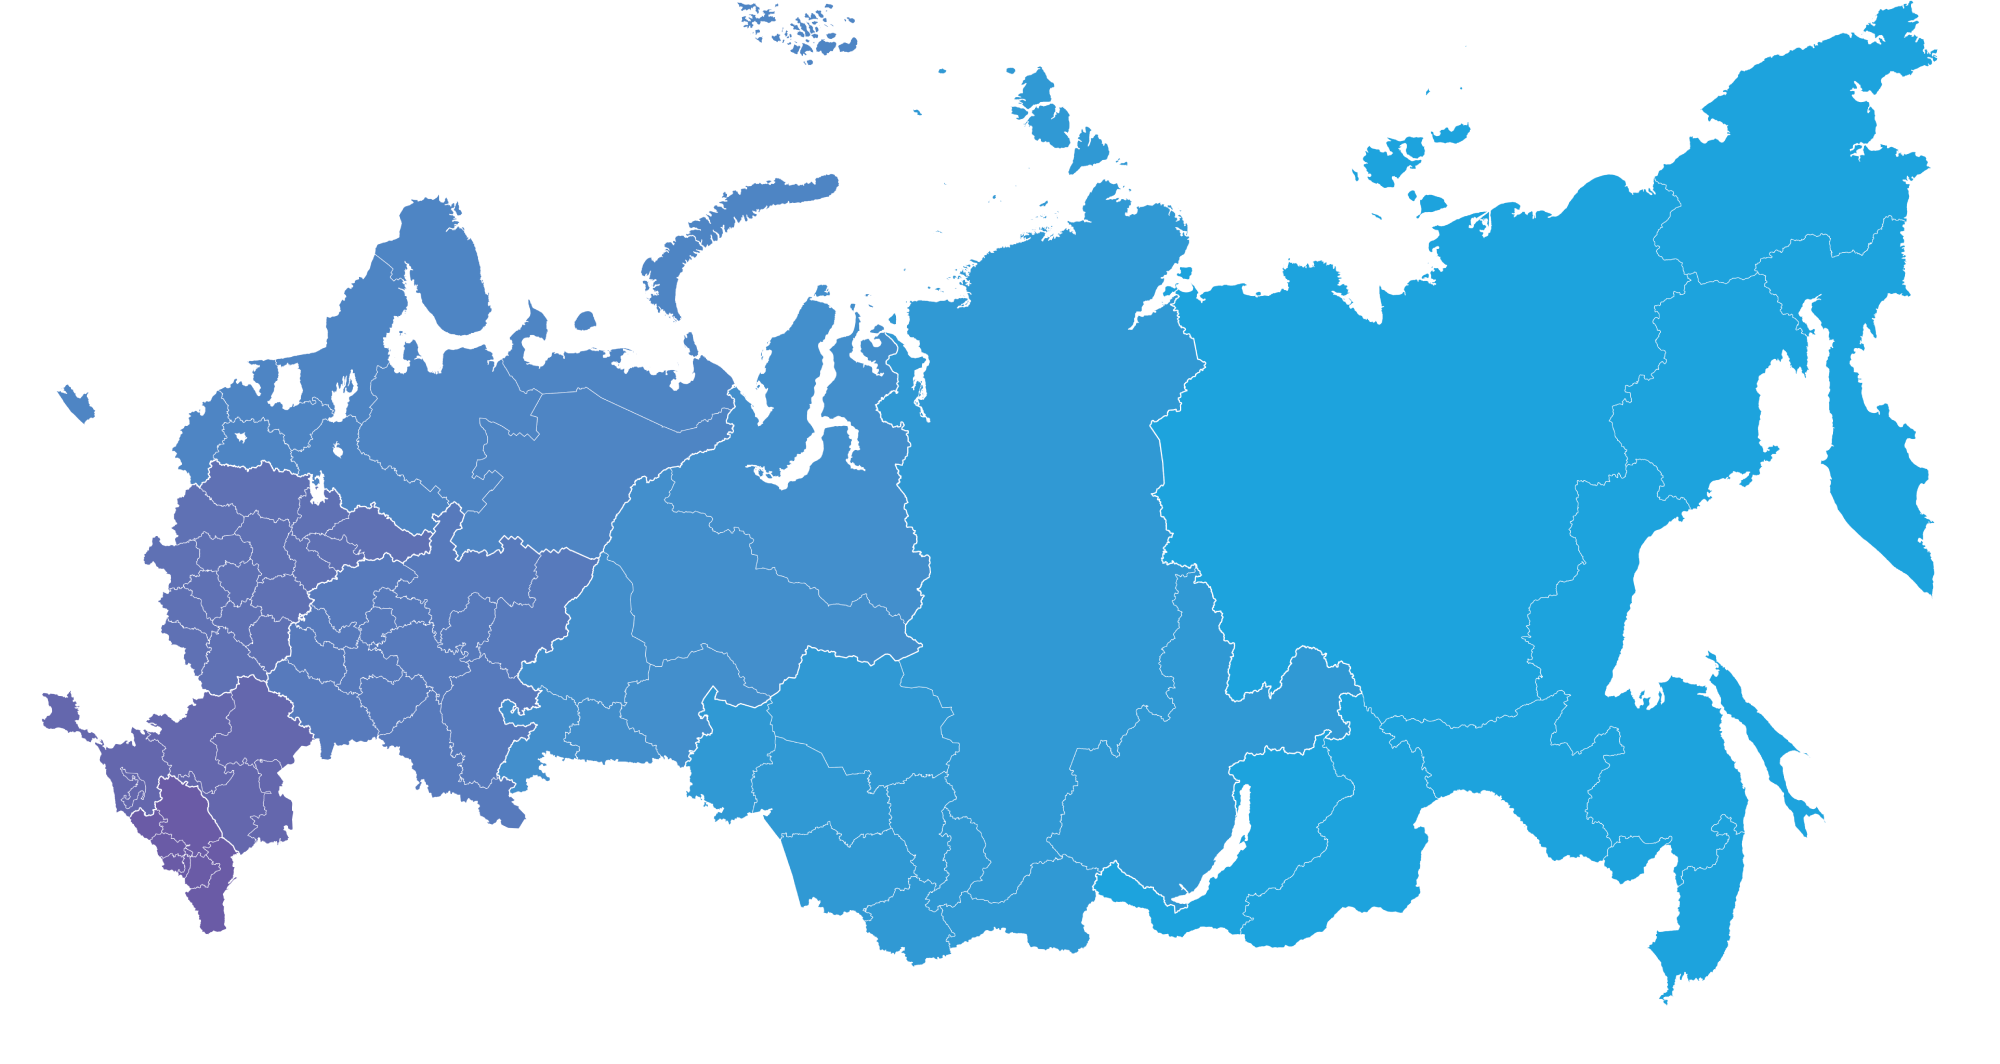 Representing russia. Карта России. Карта России контур. Очертания России. Территория России на белом фоне.